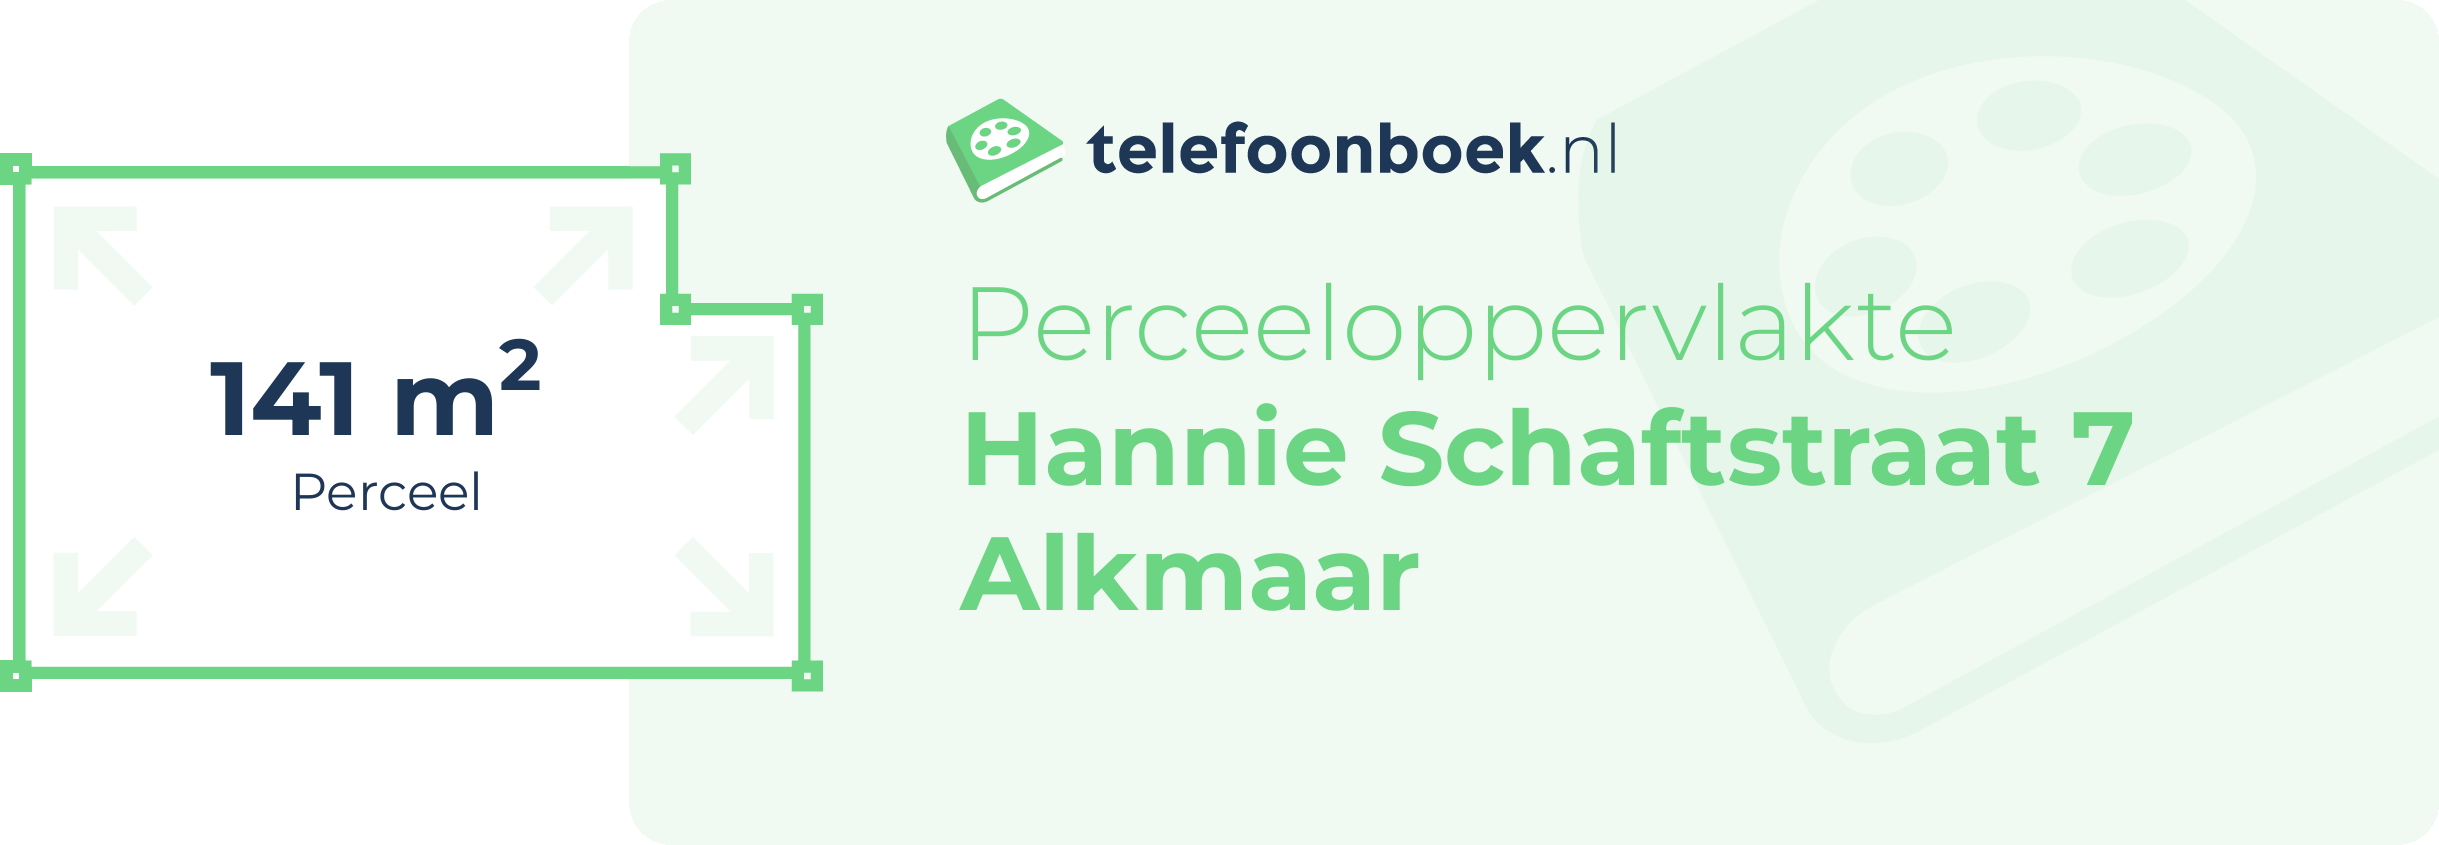 Perceeloppervlakte Hannie Schaftstraat 7 Alkmaar